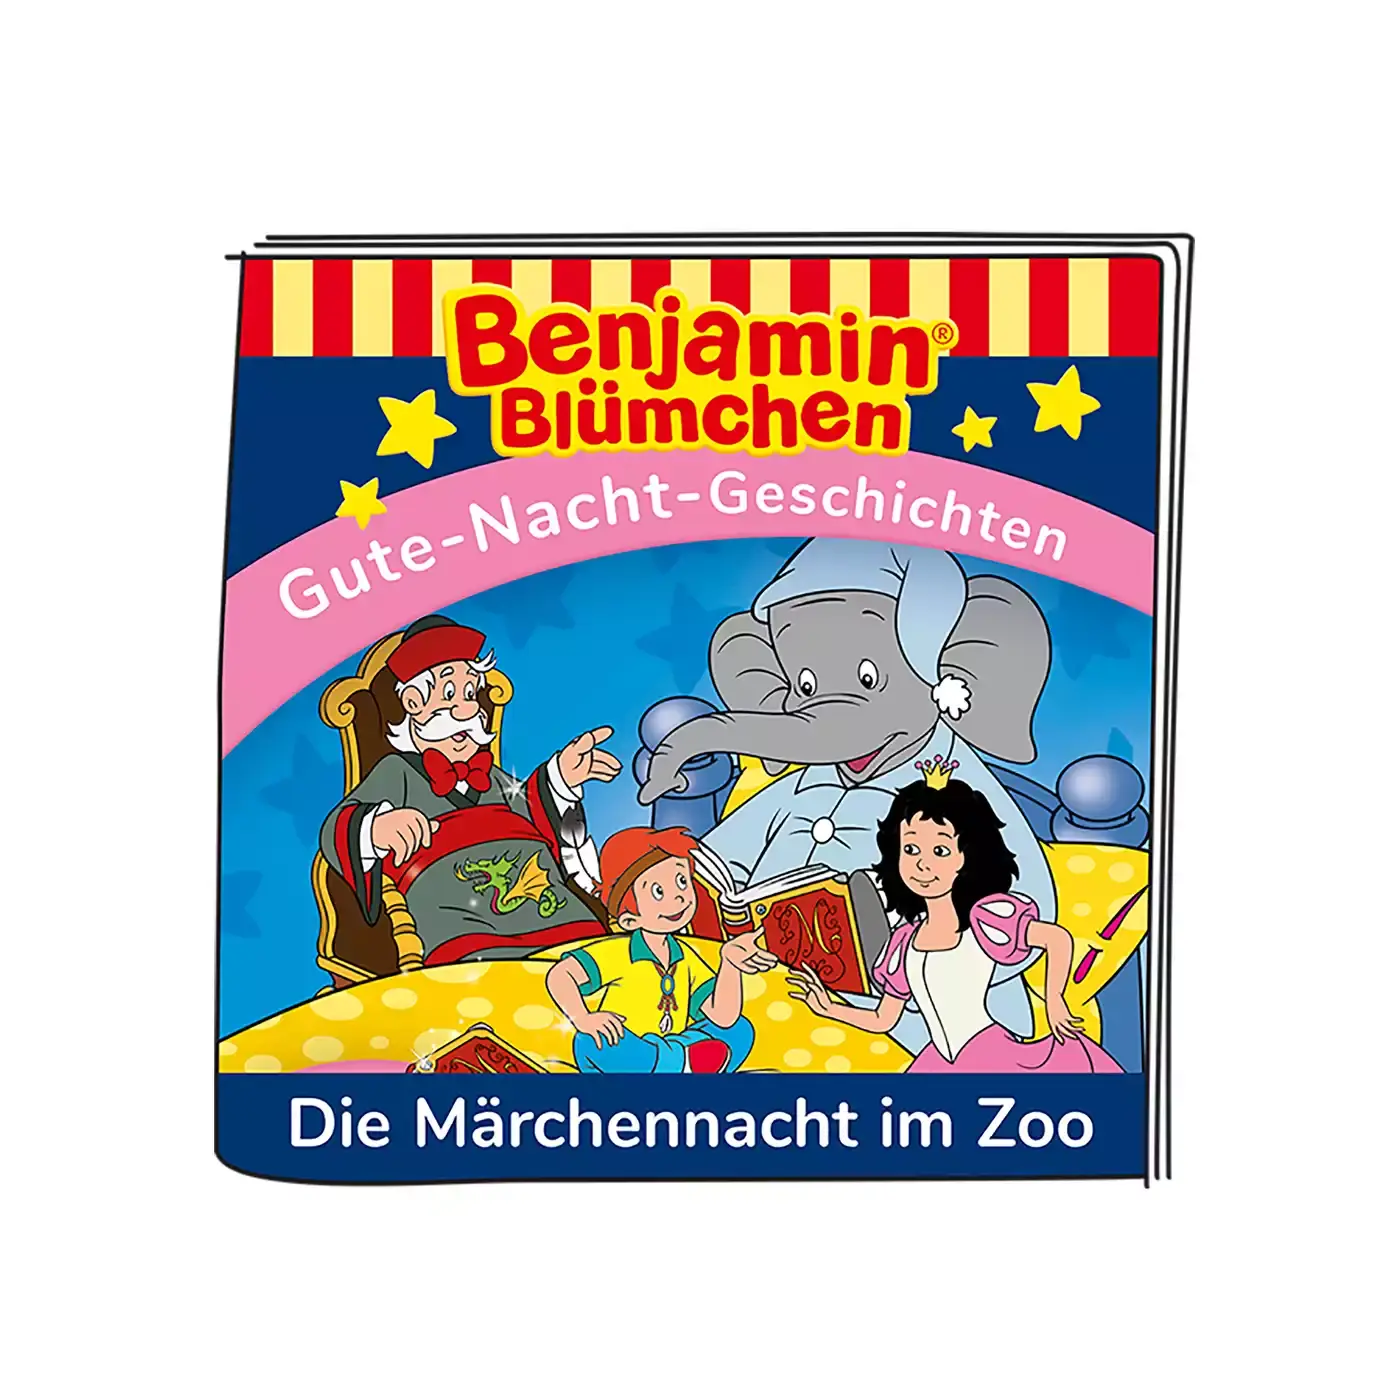 Benjamin Blümchen - Märchennacht im Zoo tonies 2000578518707 2